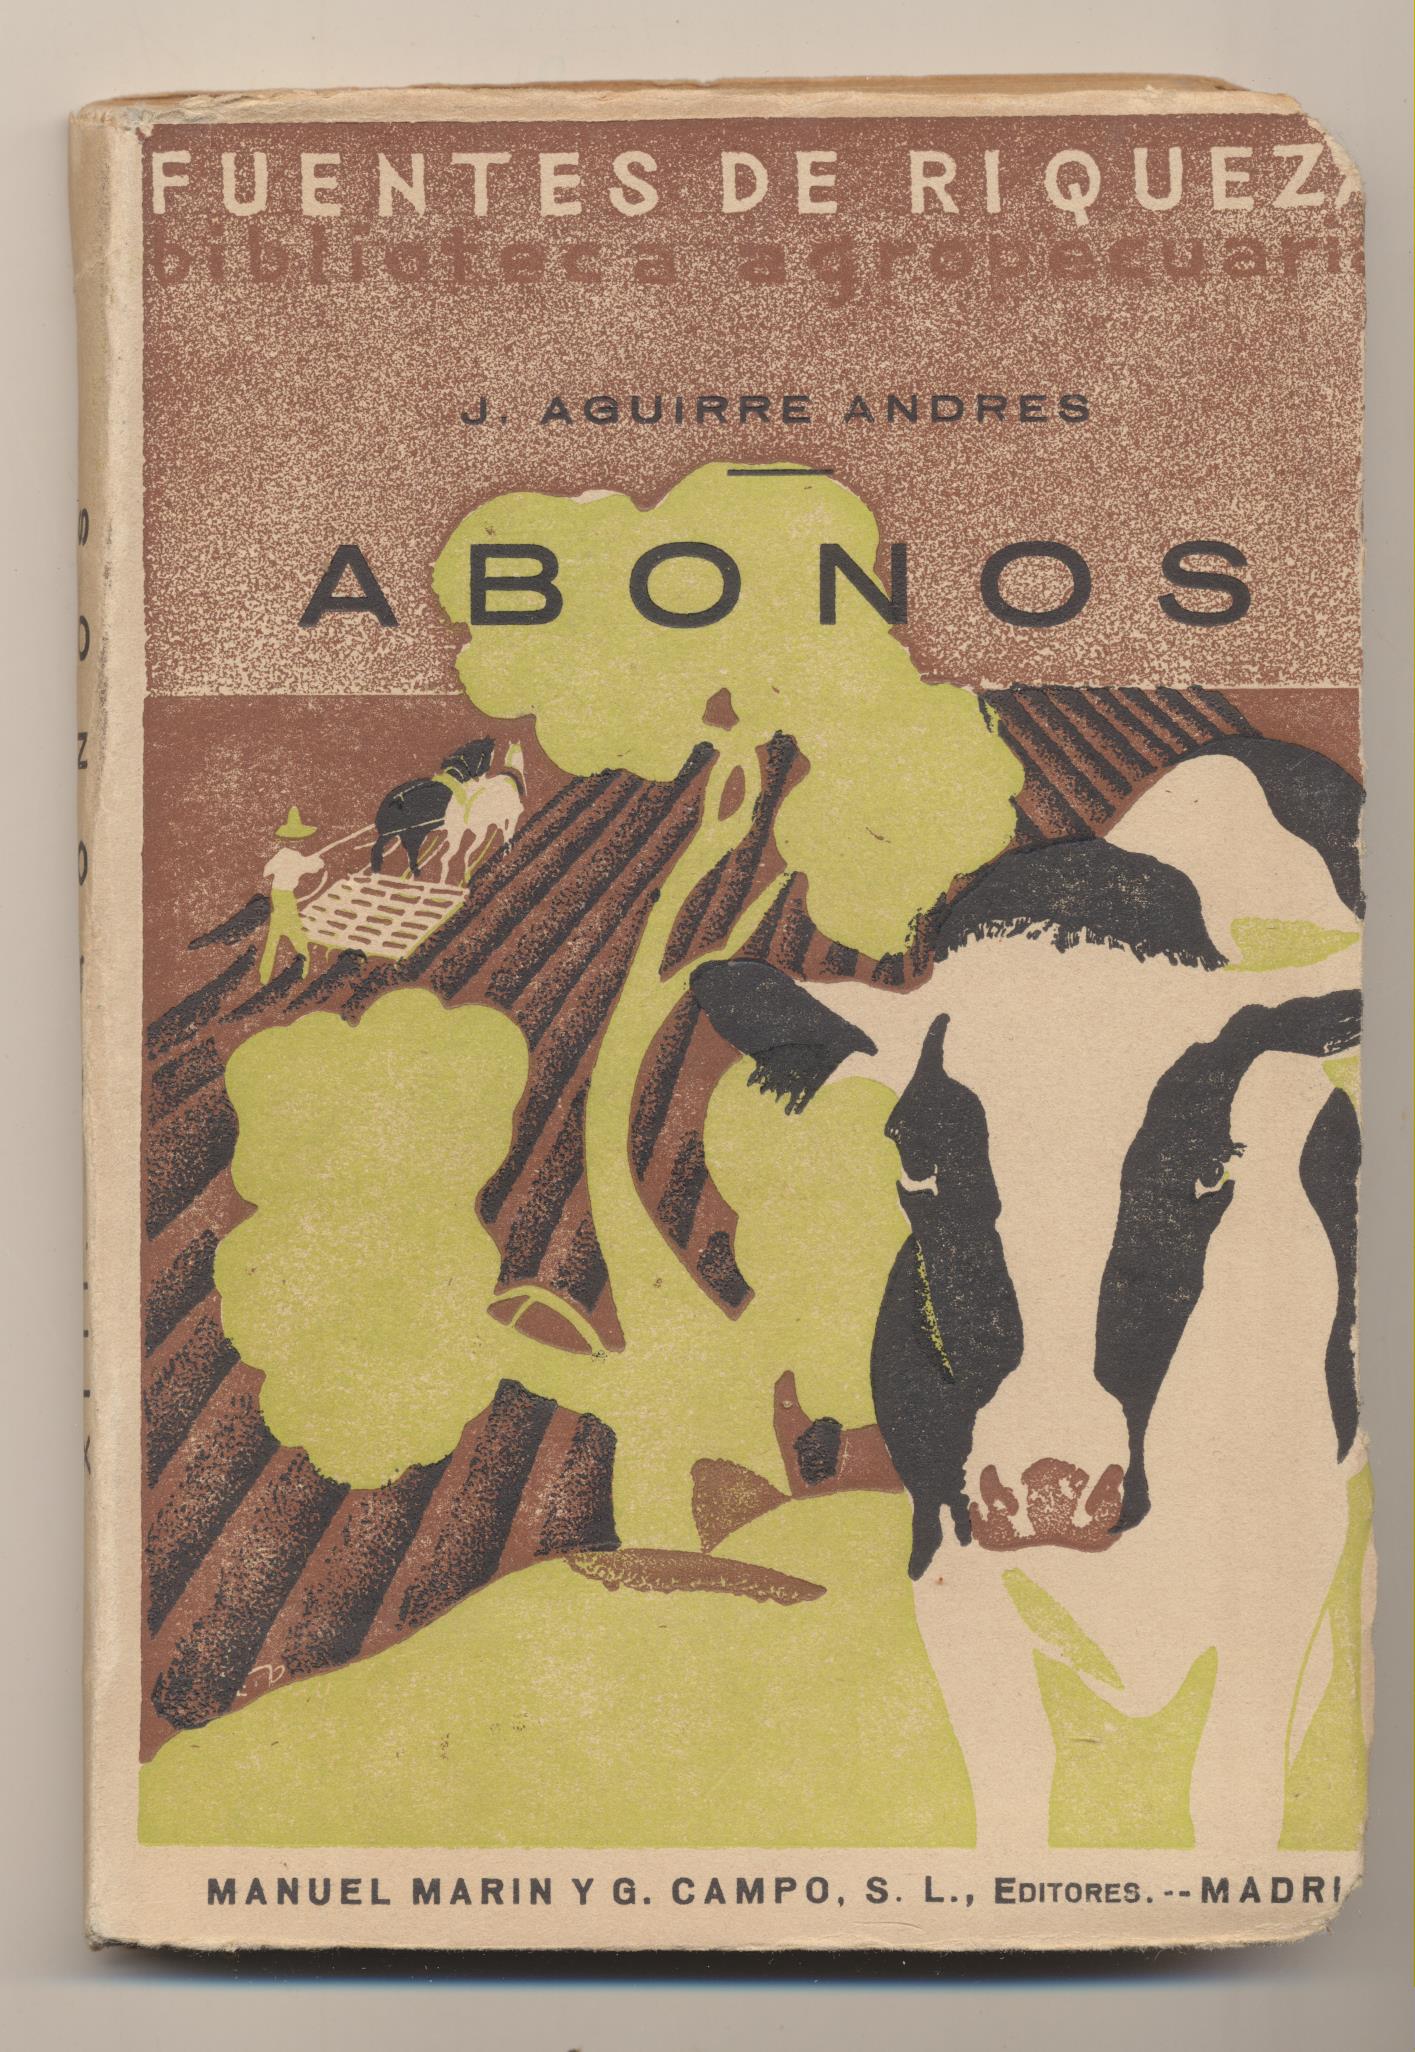 J. Aguirre Andrés. Abonos. Manuel Marín y G. Campo Editores. Madrid 1933